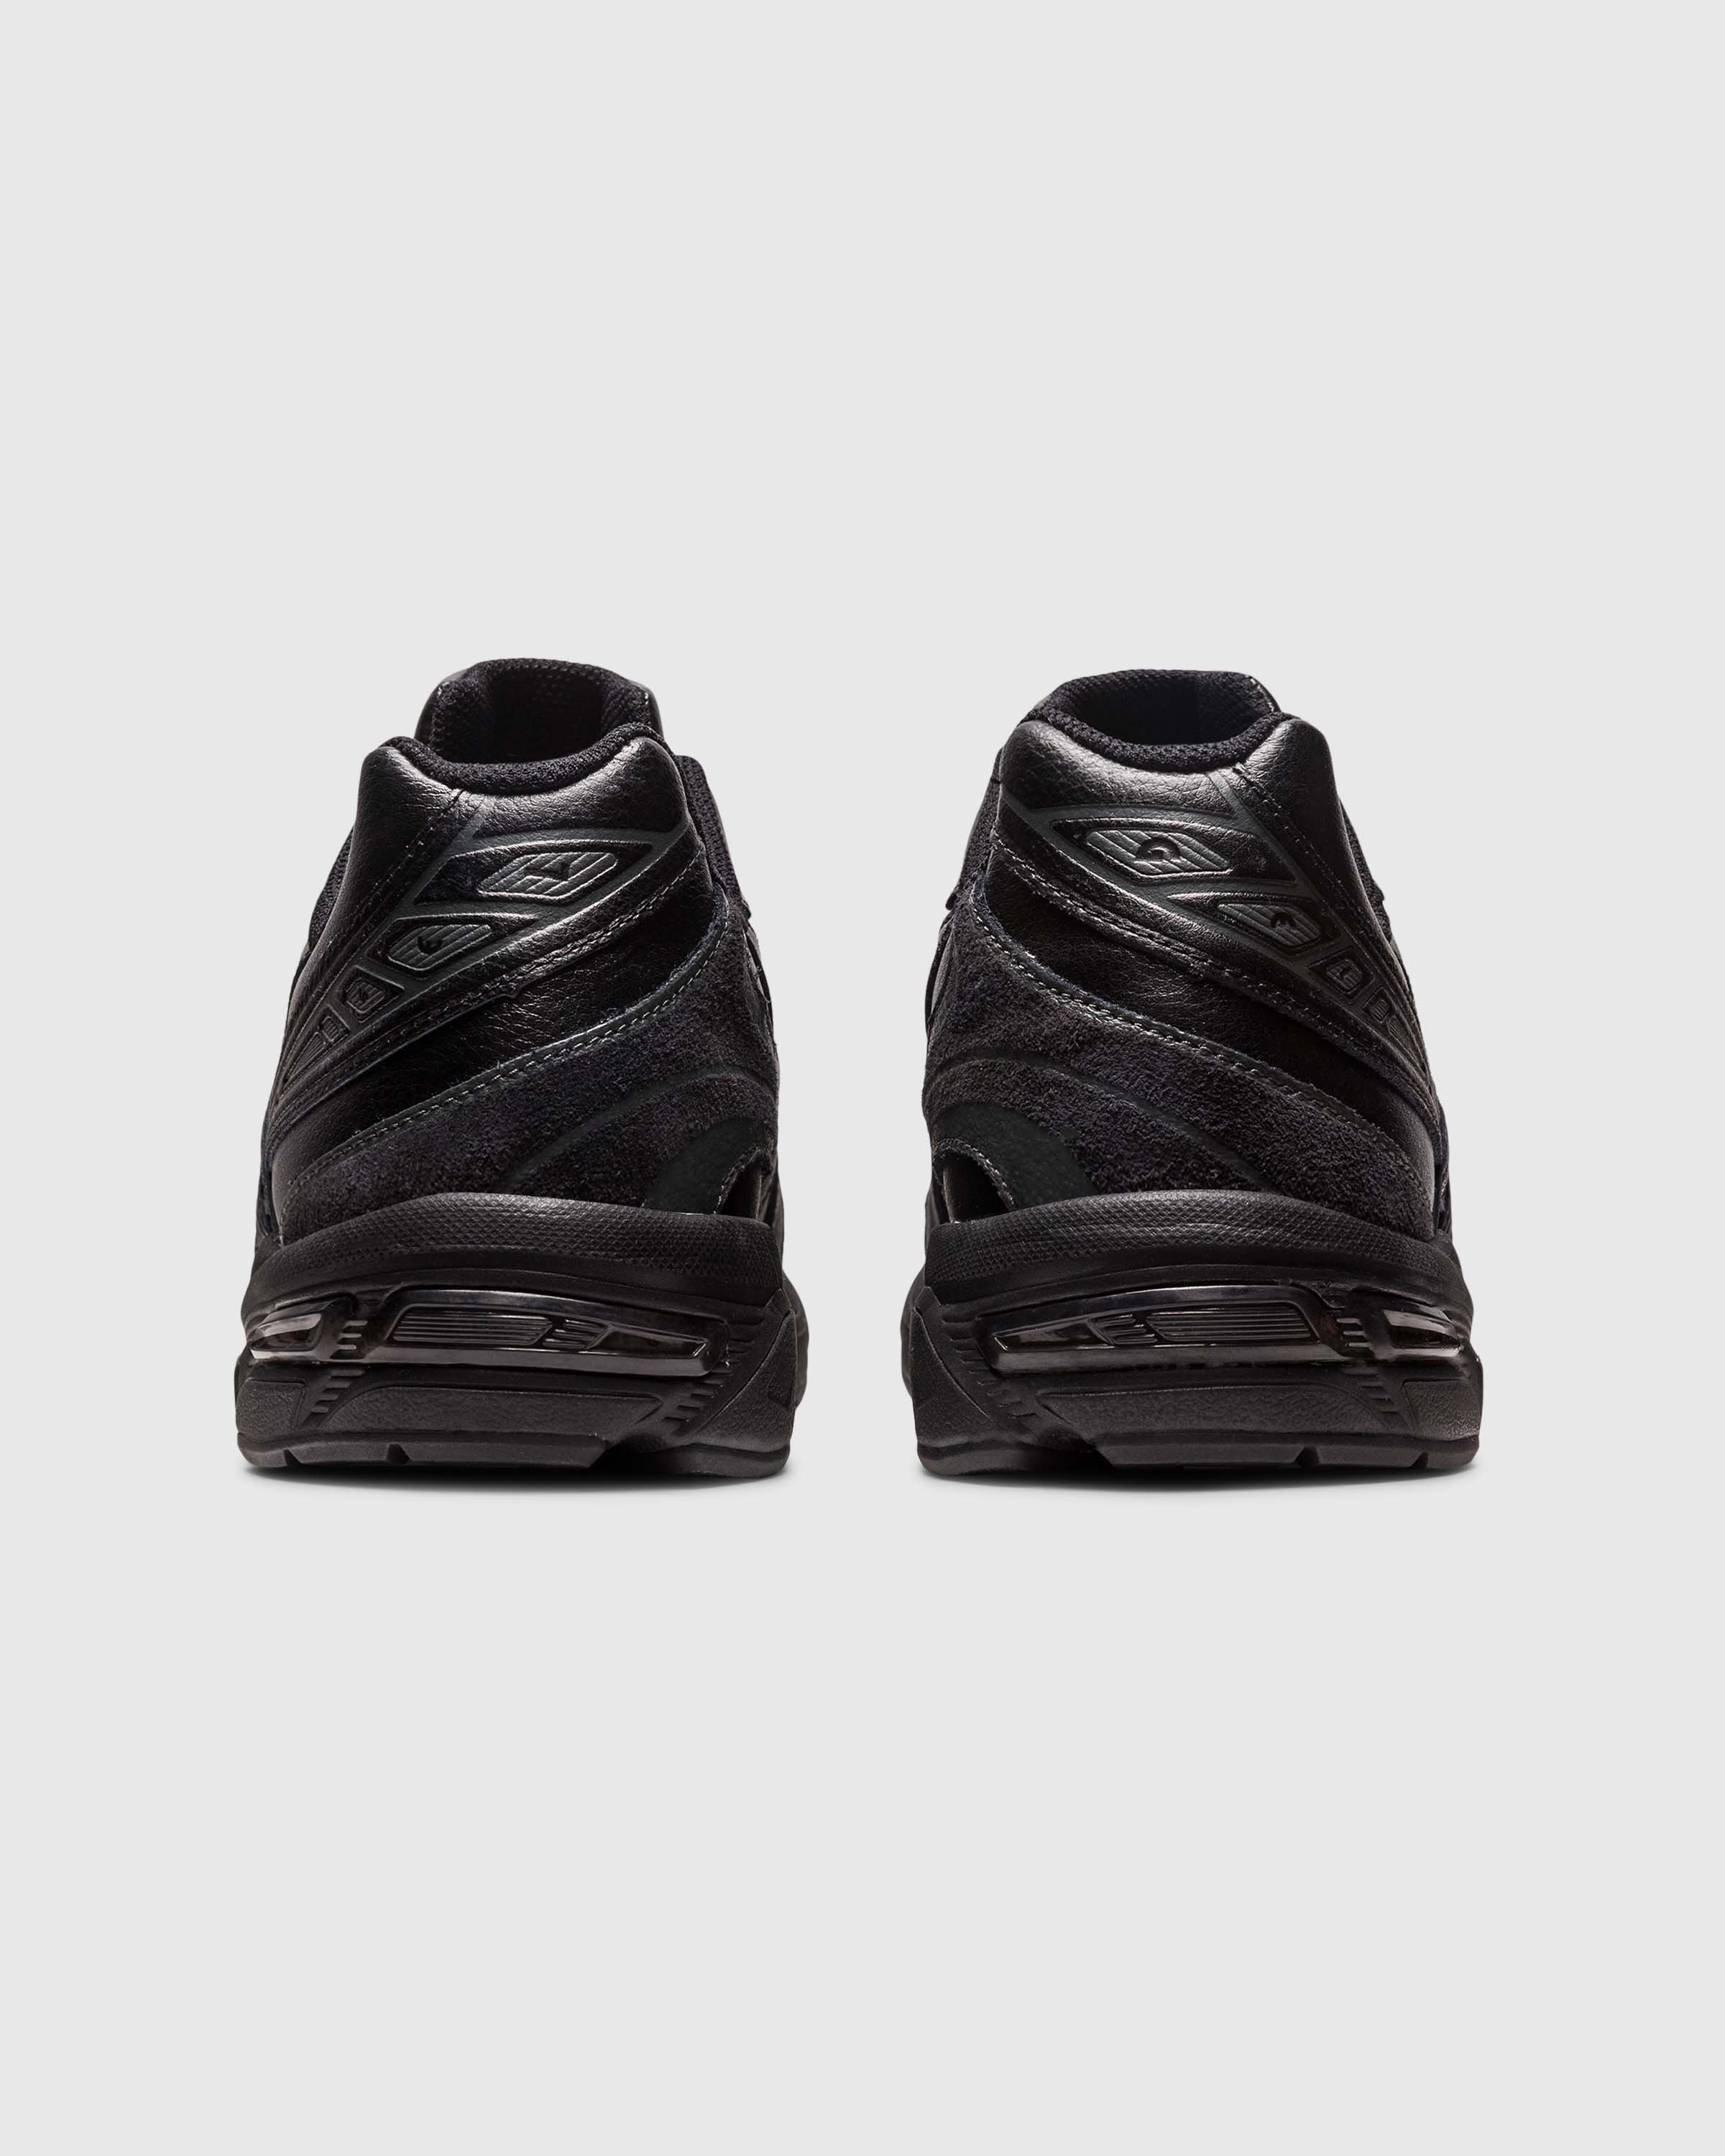 asics – GEL-1130 Black - Low Top Sneakers - Black - Image 4